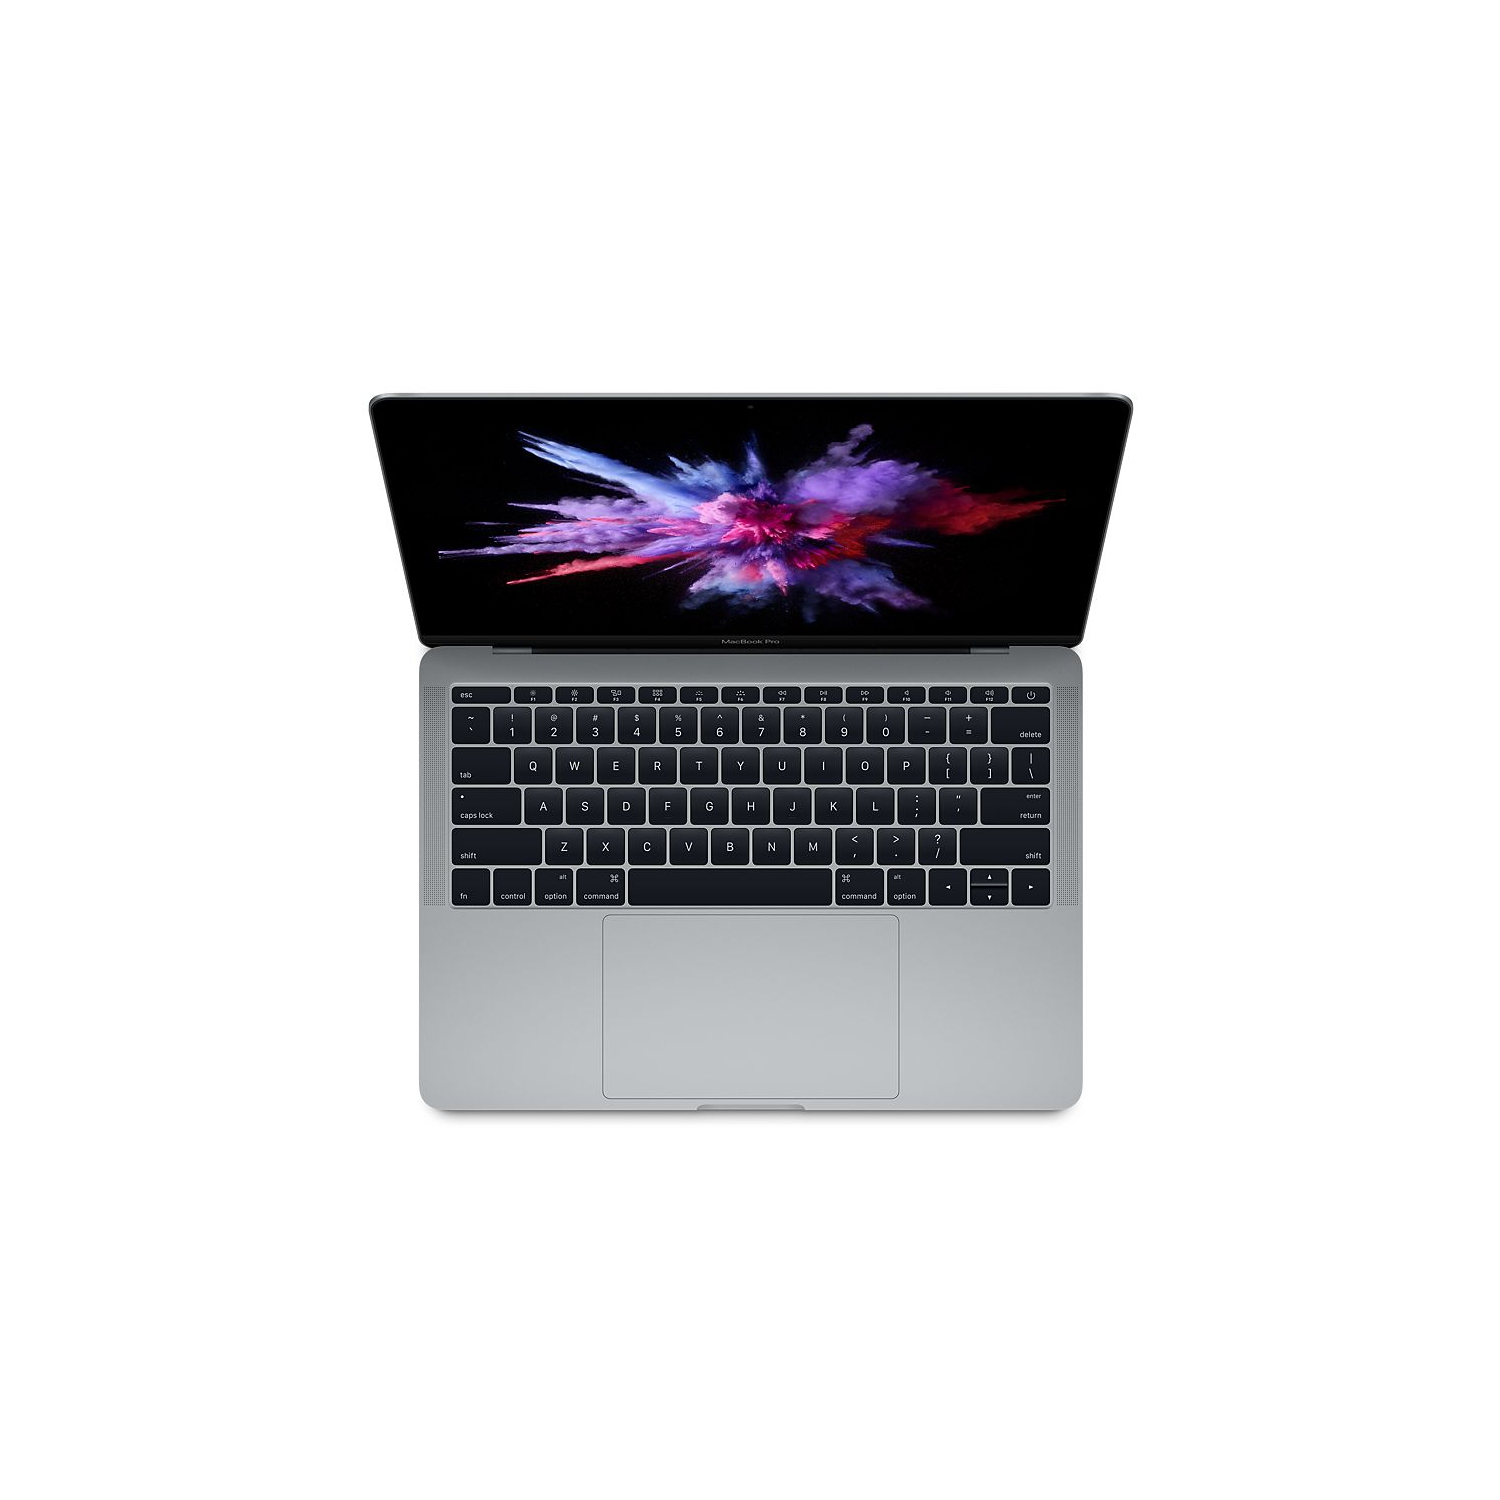 Refurbished (Excellent) - Apple MacBook Pro 13